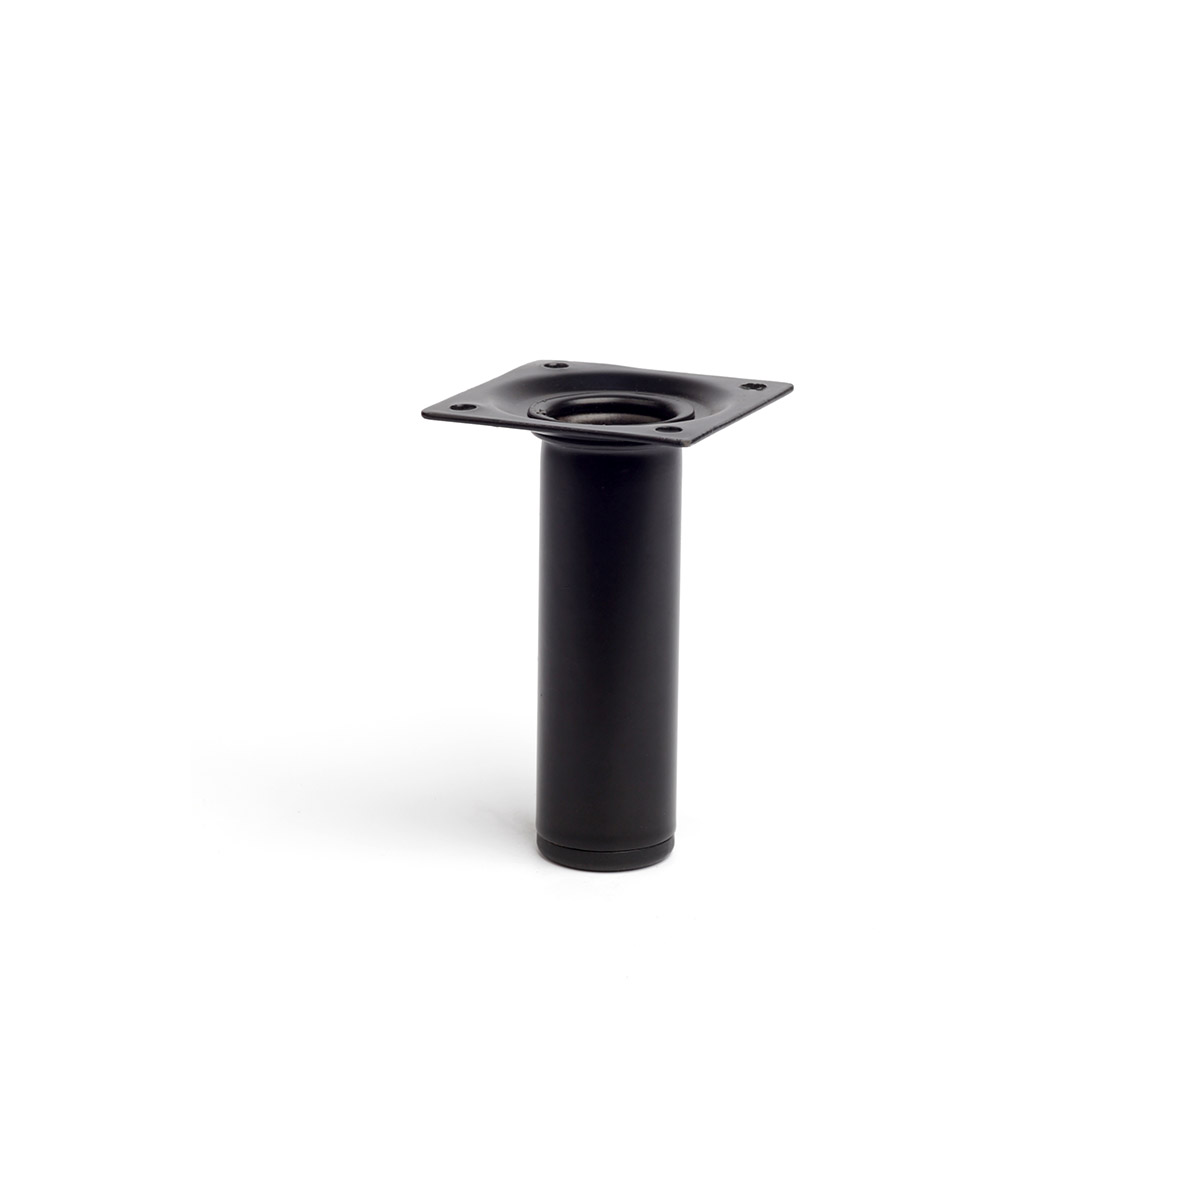 Pata de acero cilíndrica con una altura de 100 mm y acabada en negro. Dimensiones: 30x30x100 mm